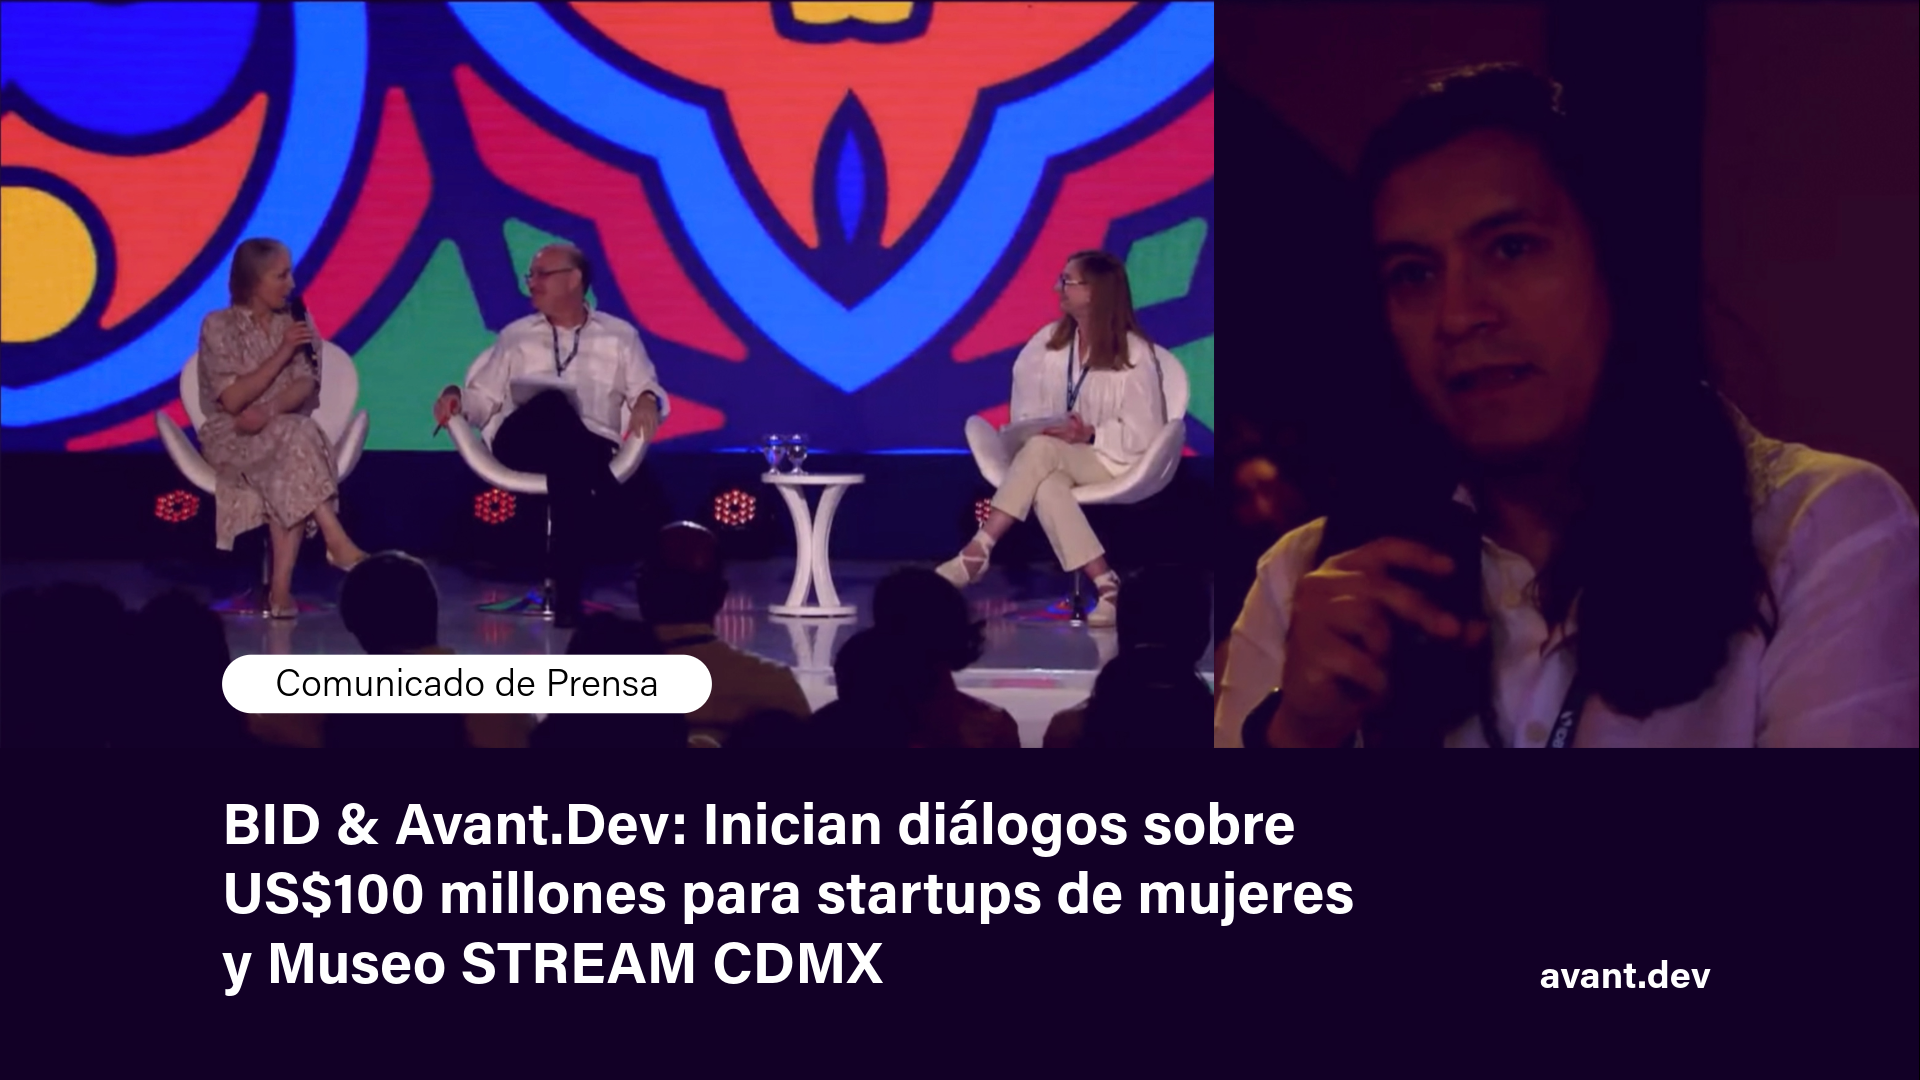 BID & Avant.Dev: Inician diálogos sobre US$100 millones para startups de mujeres y Museo STREAM CDMX